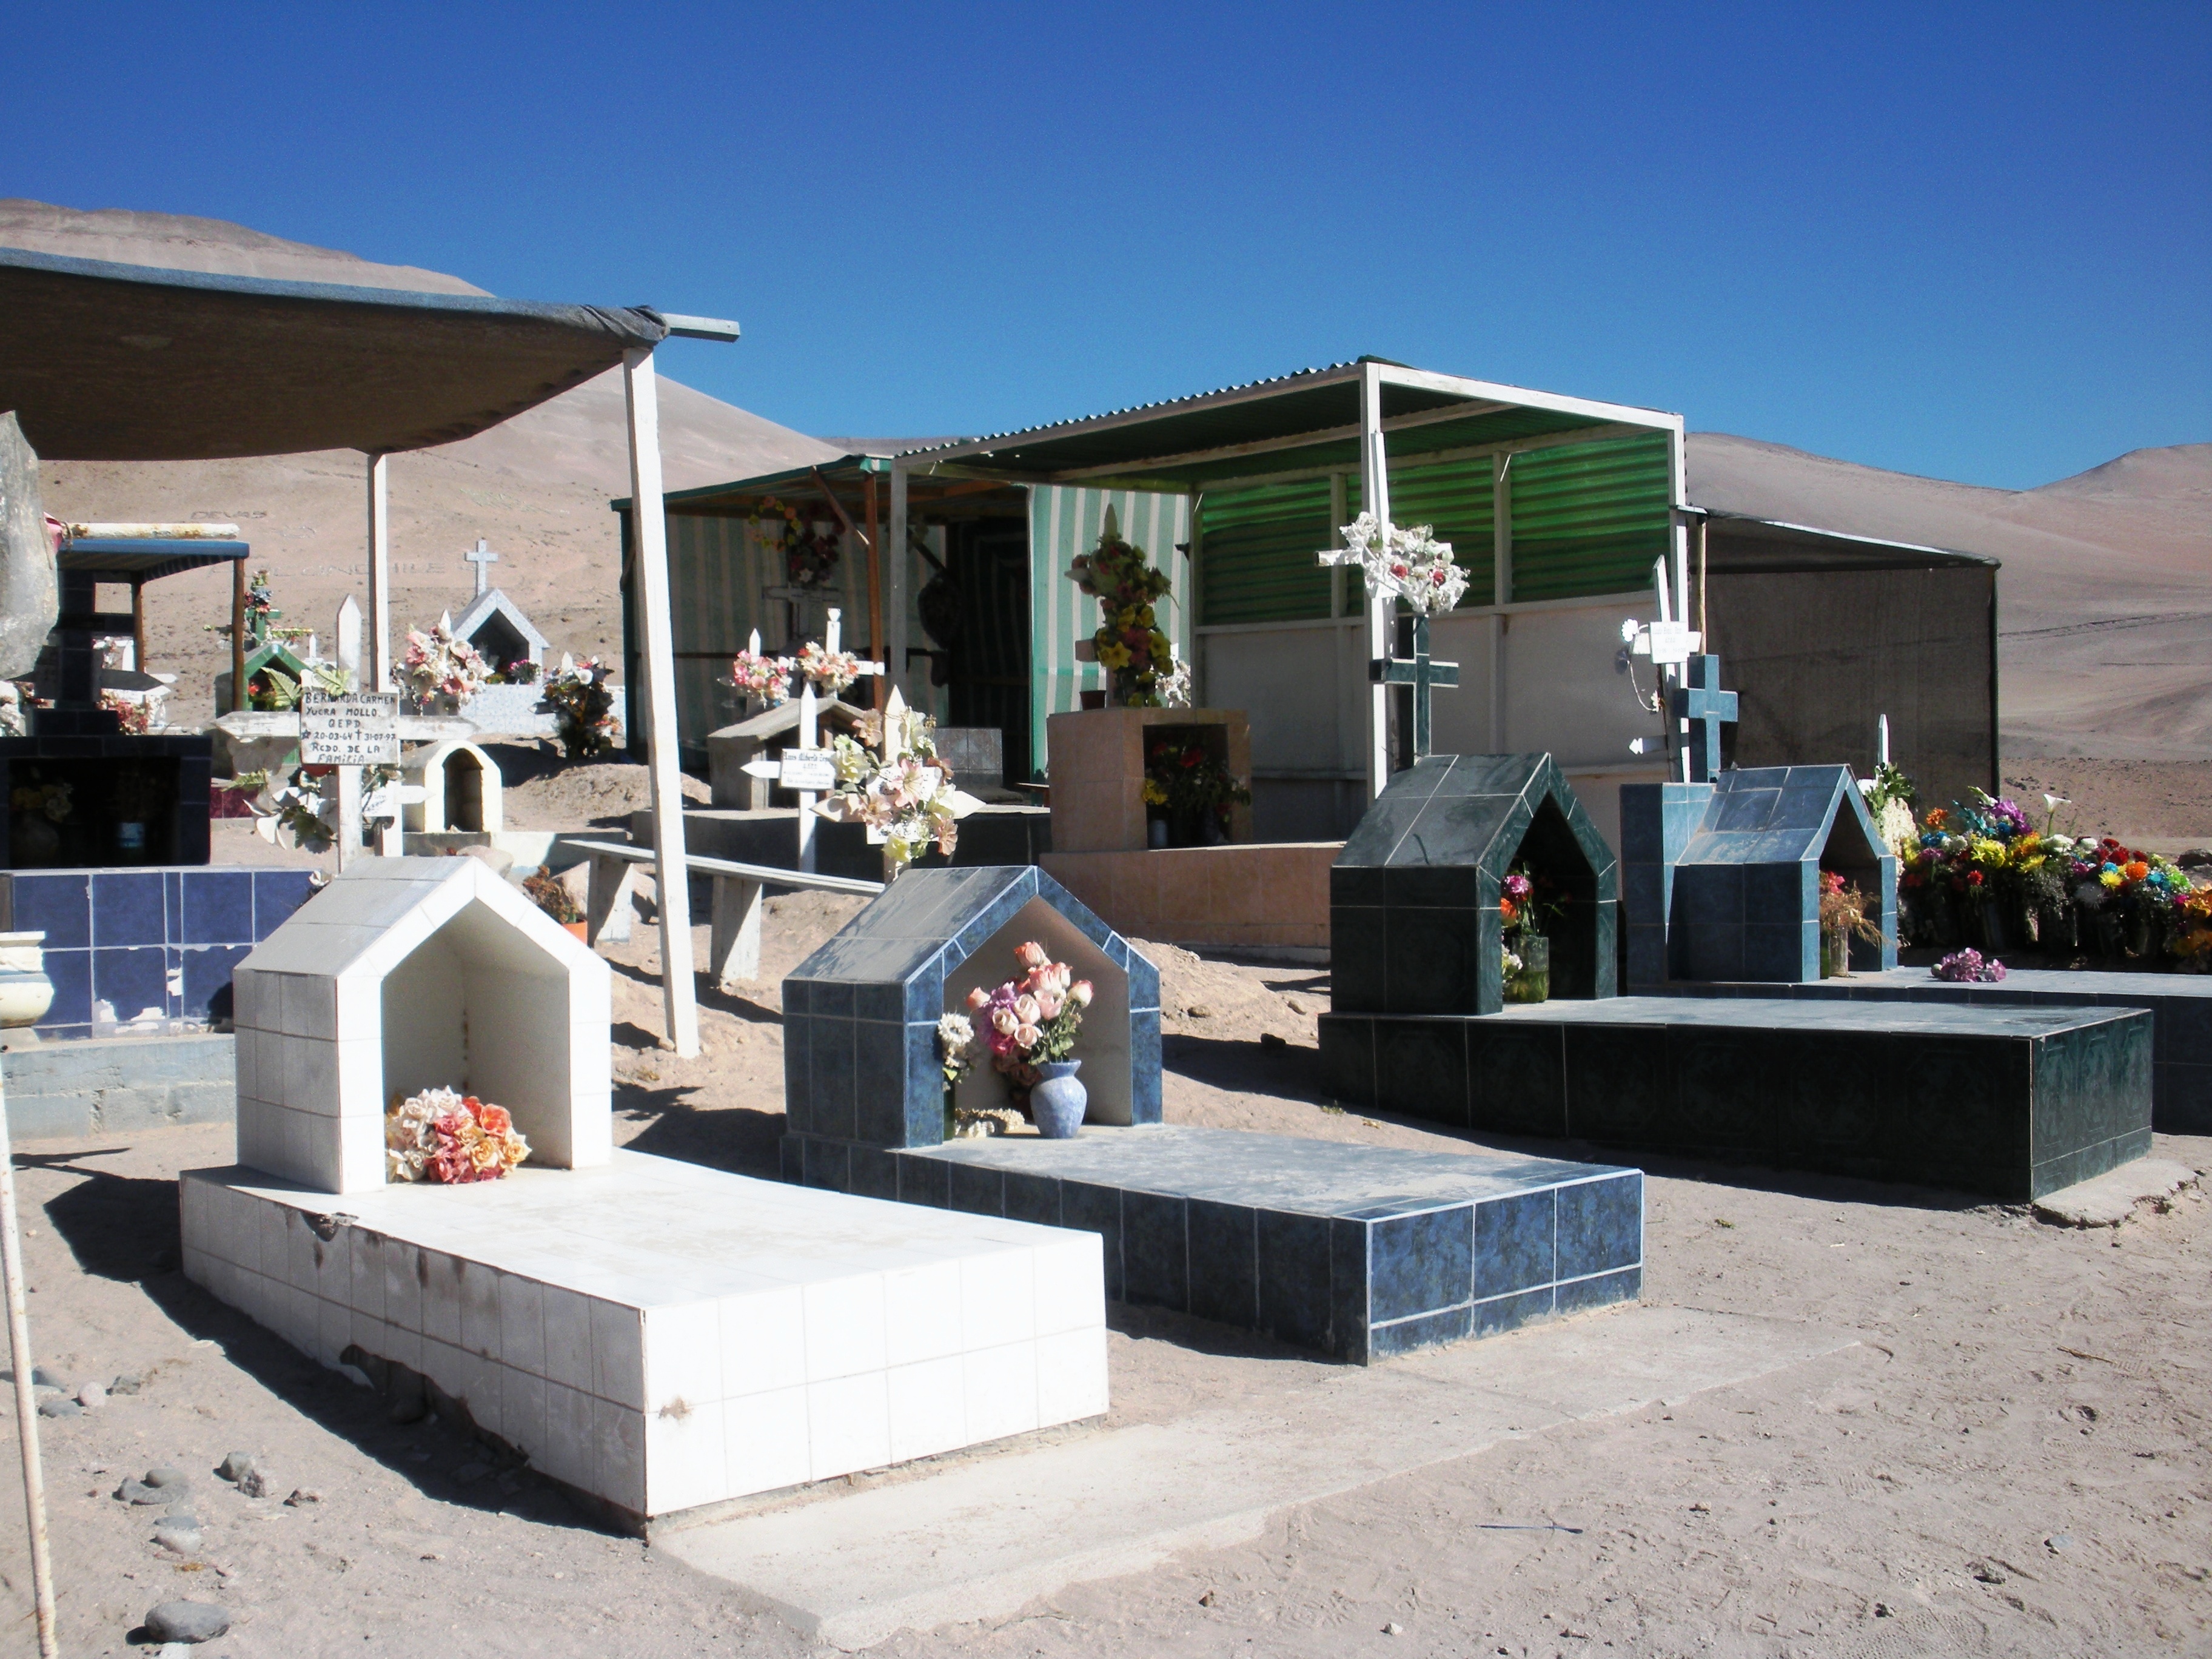 A cemetery in Poconchile